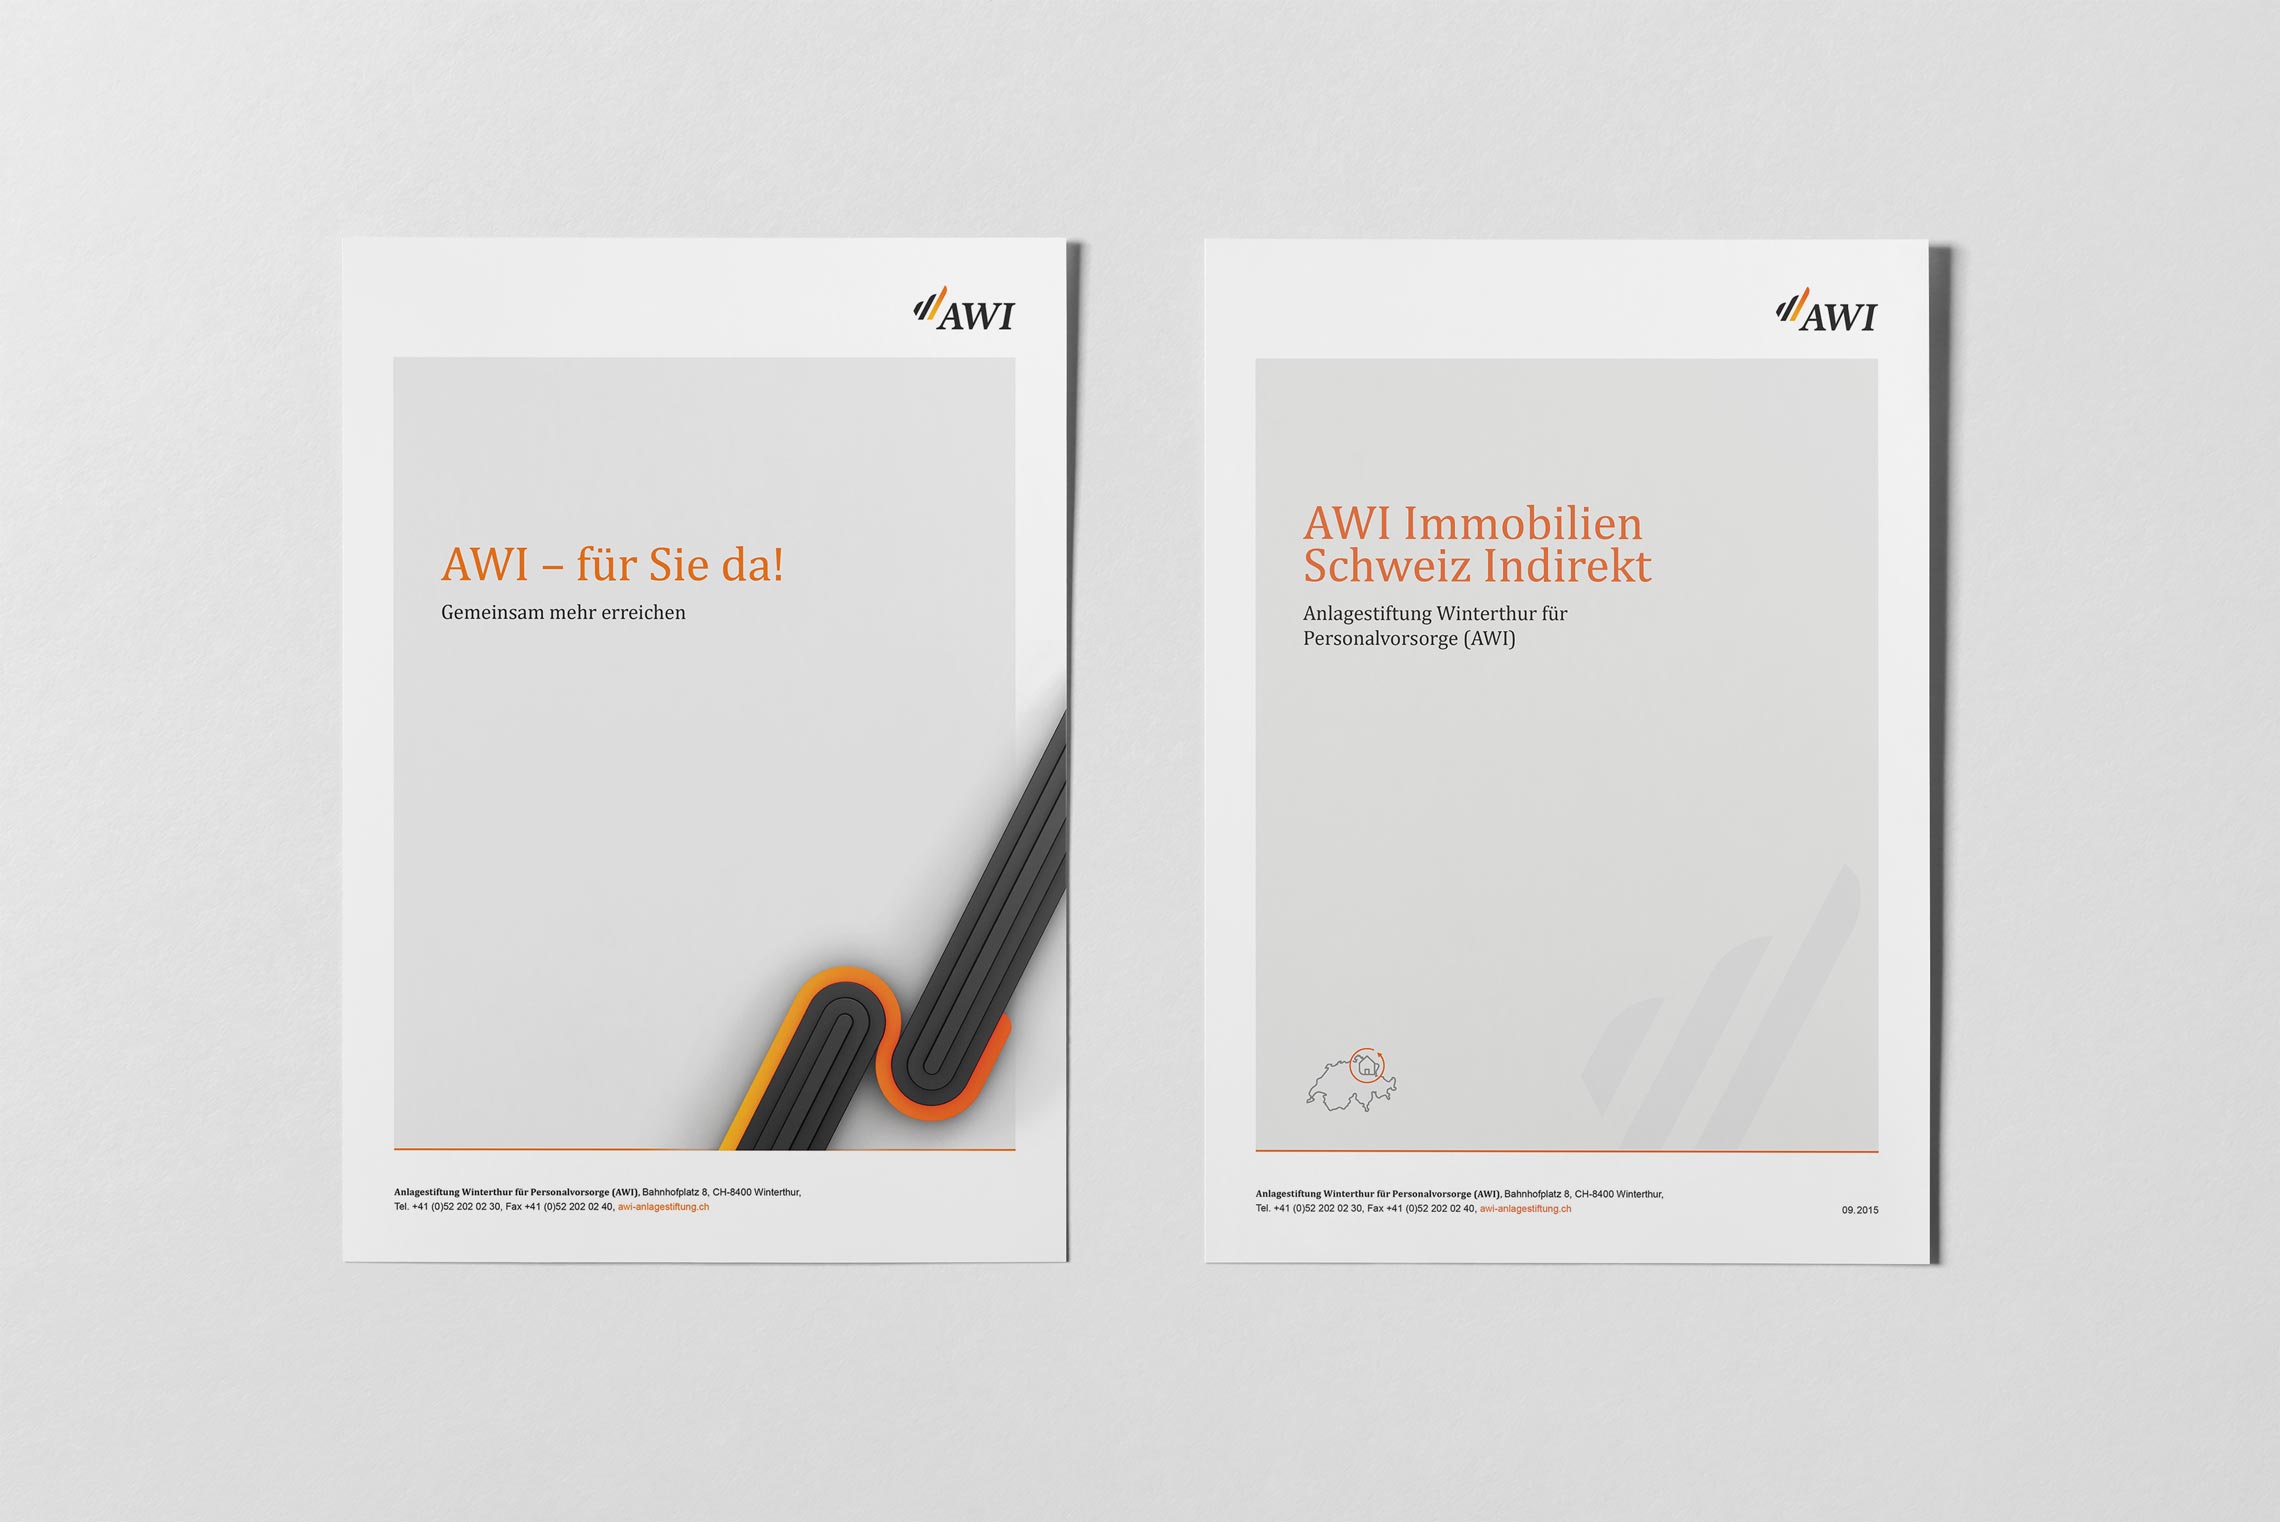 Datenbläetter für die Anlagestiftung Winterthur, Corporate Design